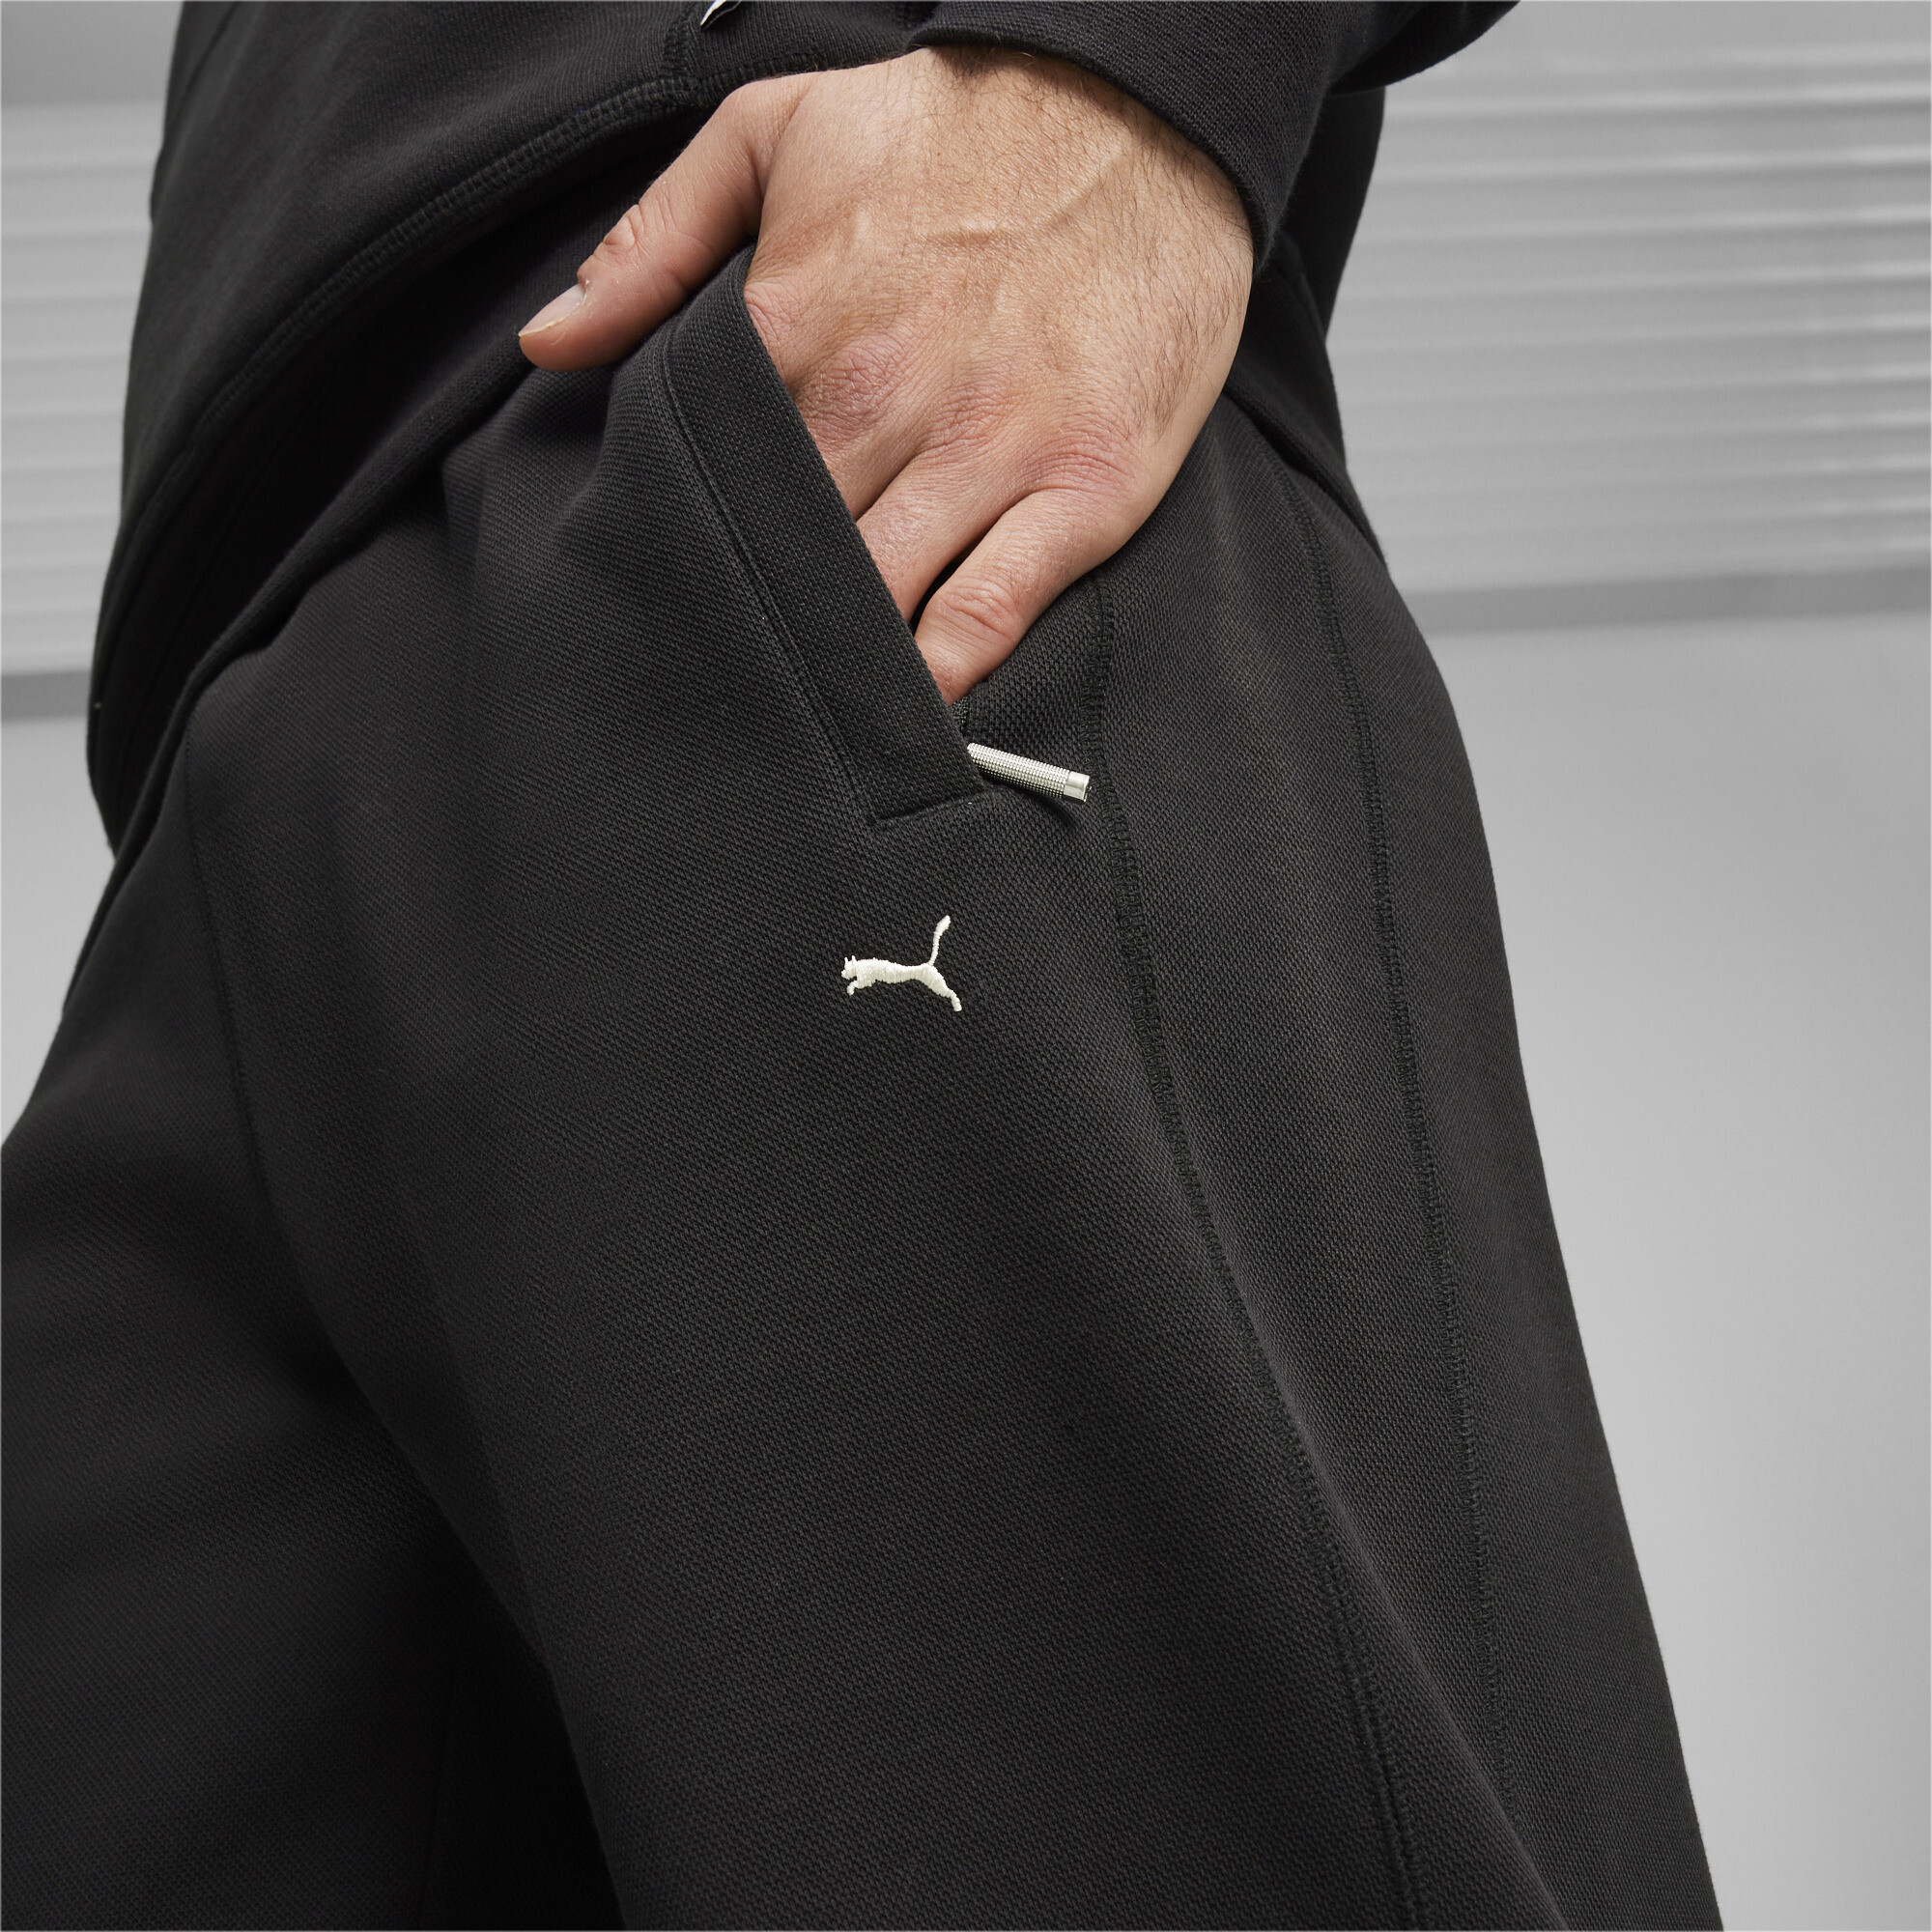 Men's PUMA MMQ T7 Track Pants In Black, Size 2XL